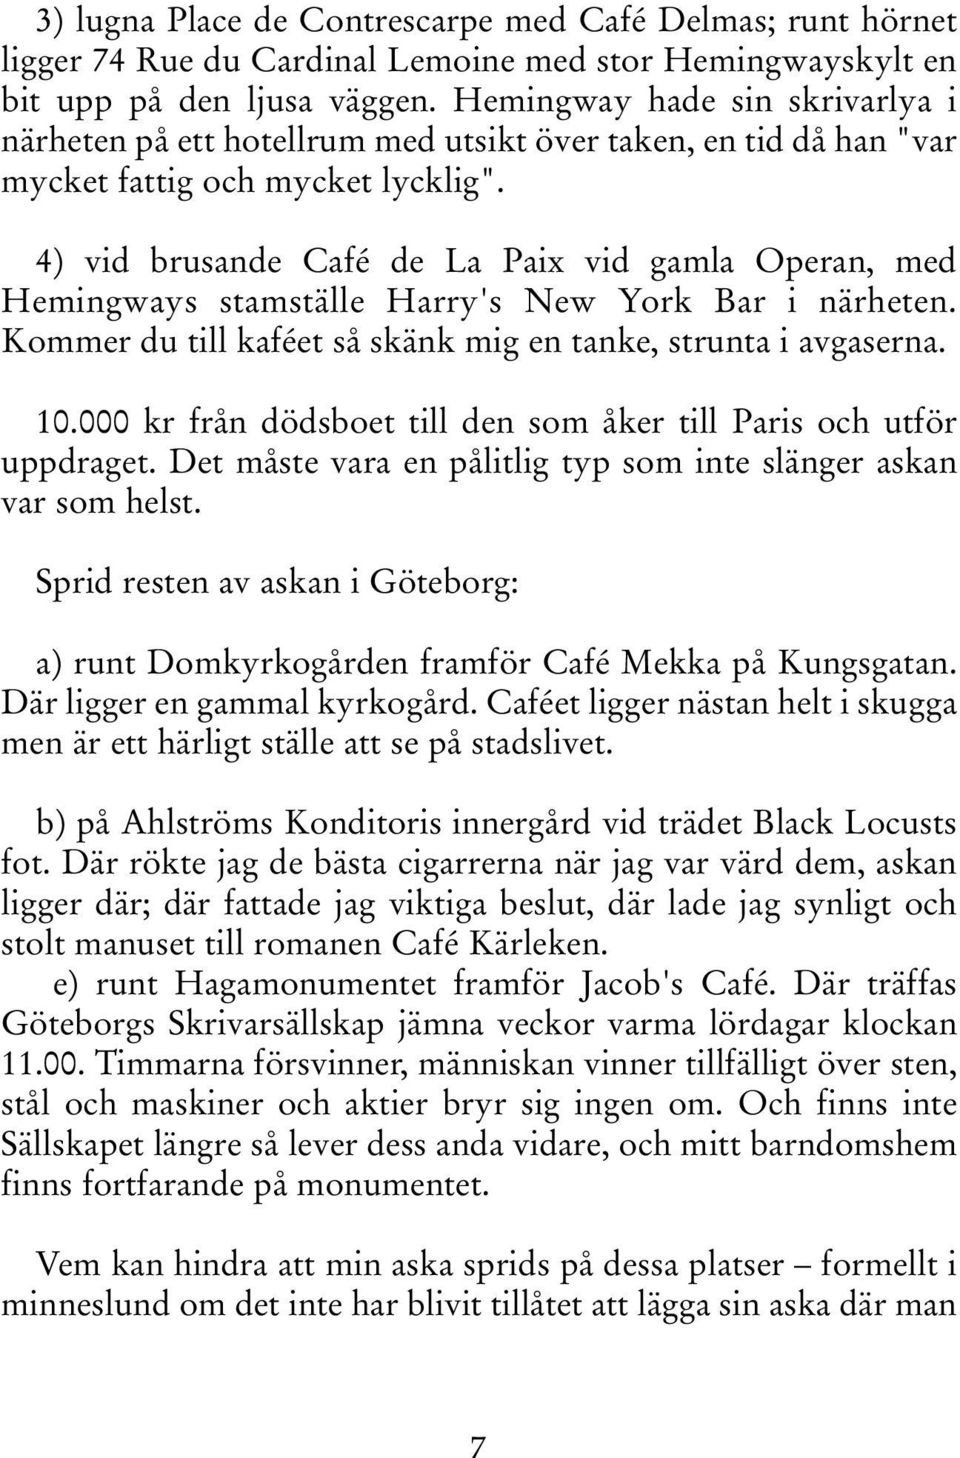 4) vid brusande Café de La Paix vid gamla Operan, med Hemingways stamställe Harry's New York Bar i närheten. Kommer du till kaféet så skänk mig en tanke, strunta i avgaserna. 10.